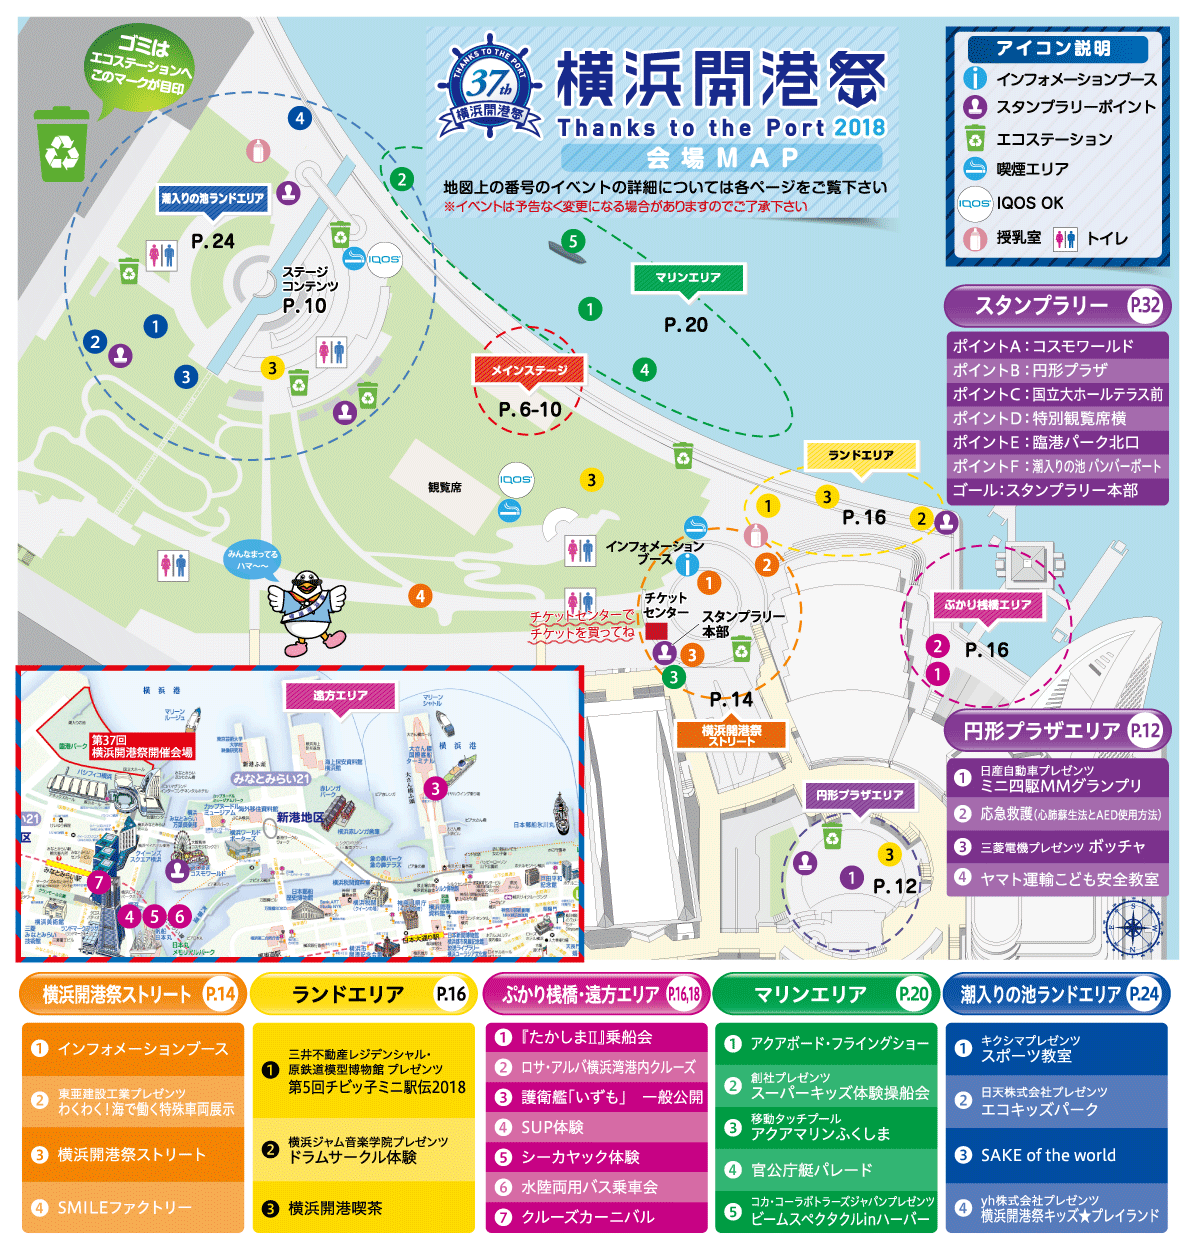 第37回横浜開港祭会場マップ